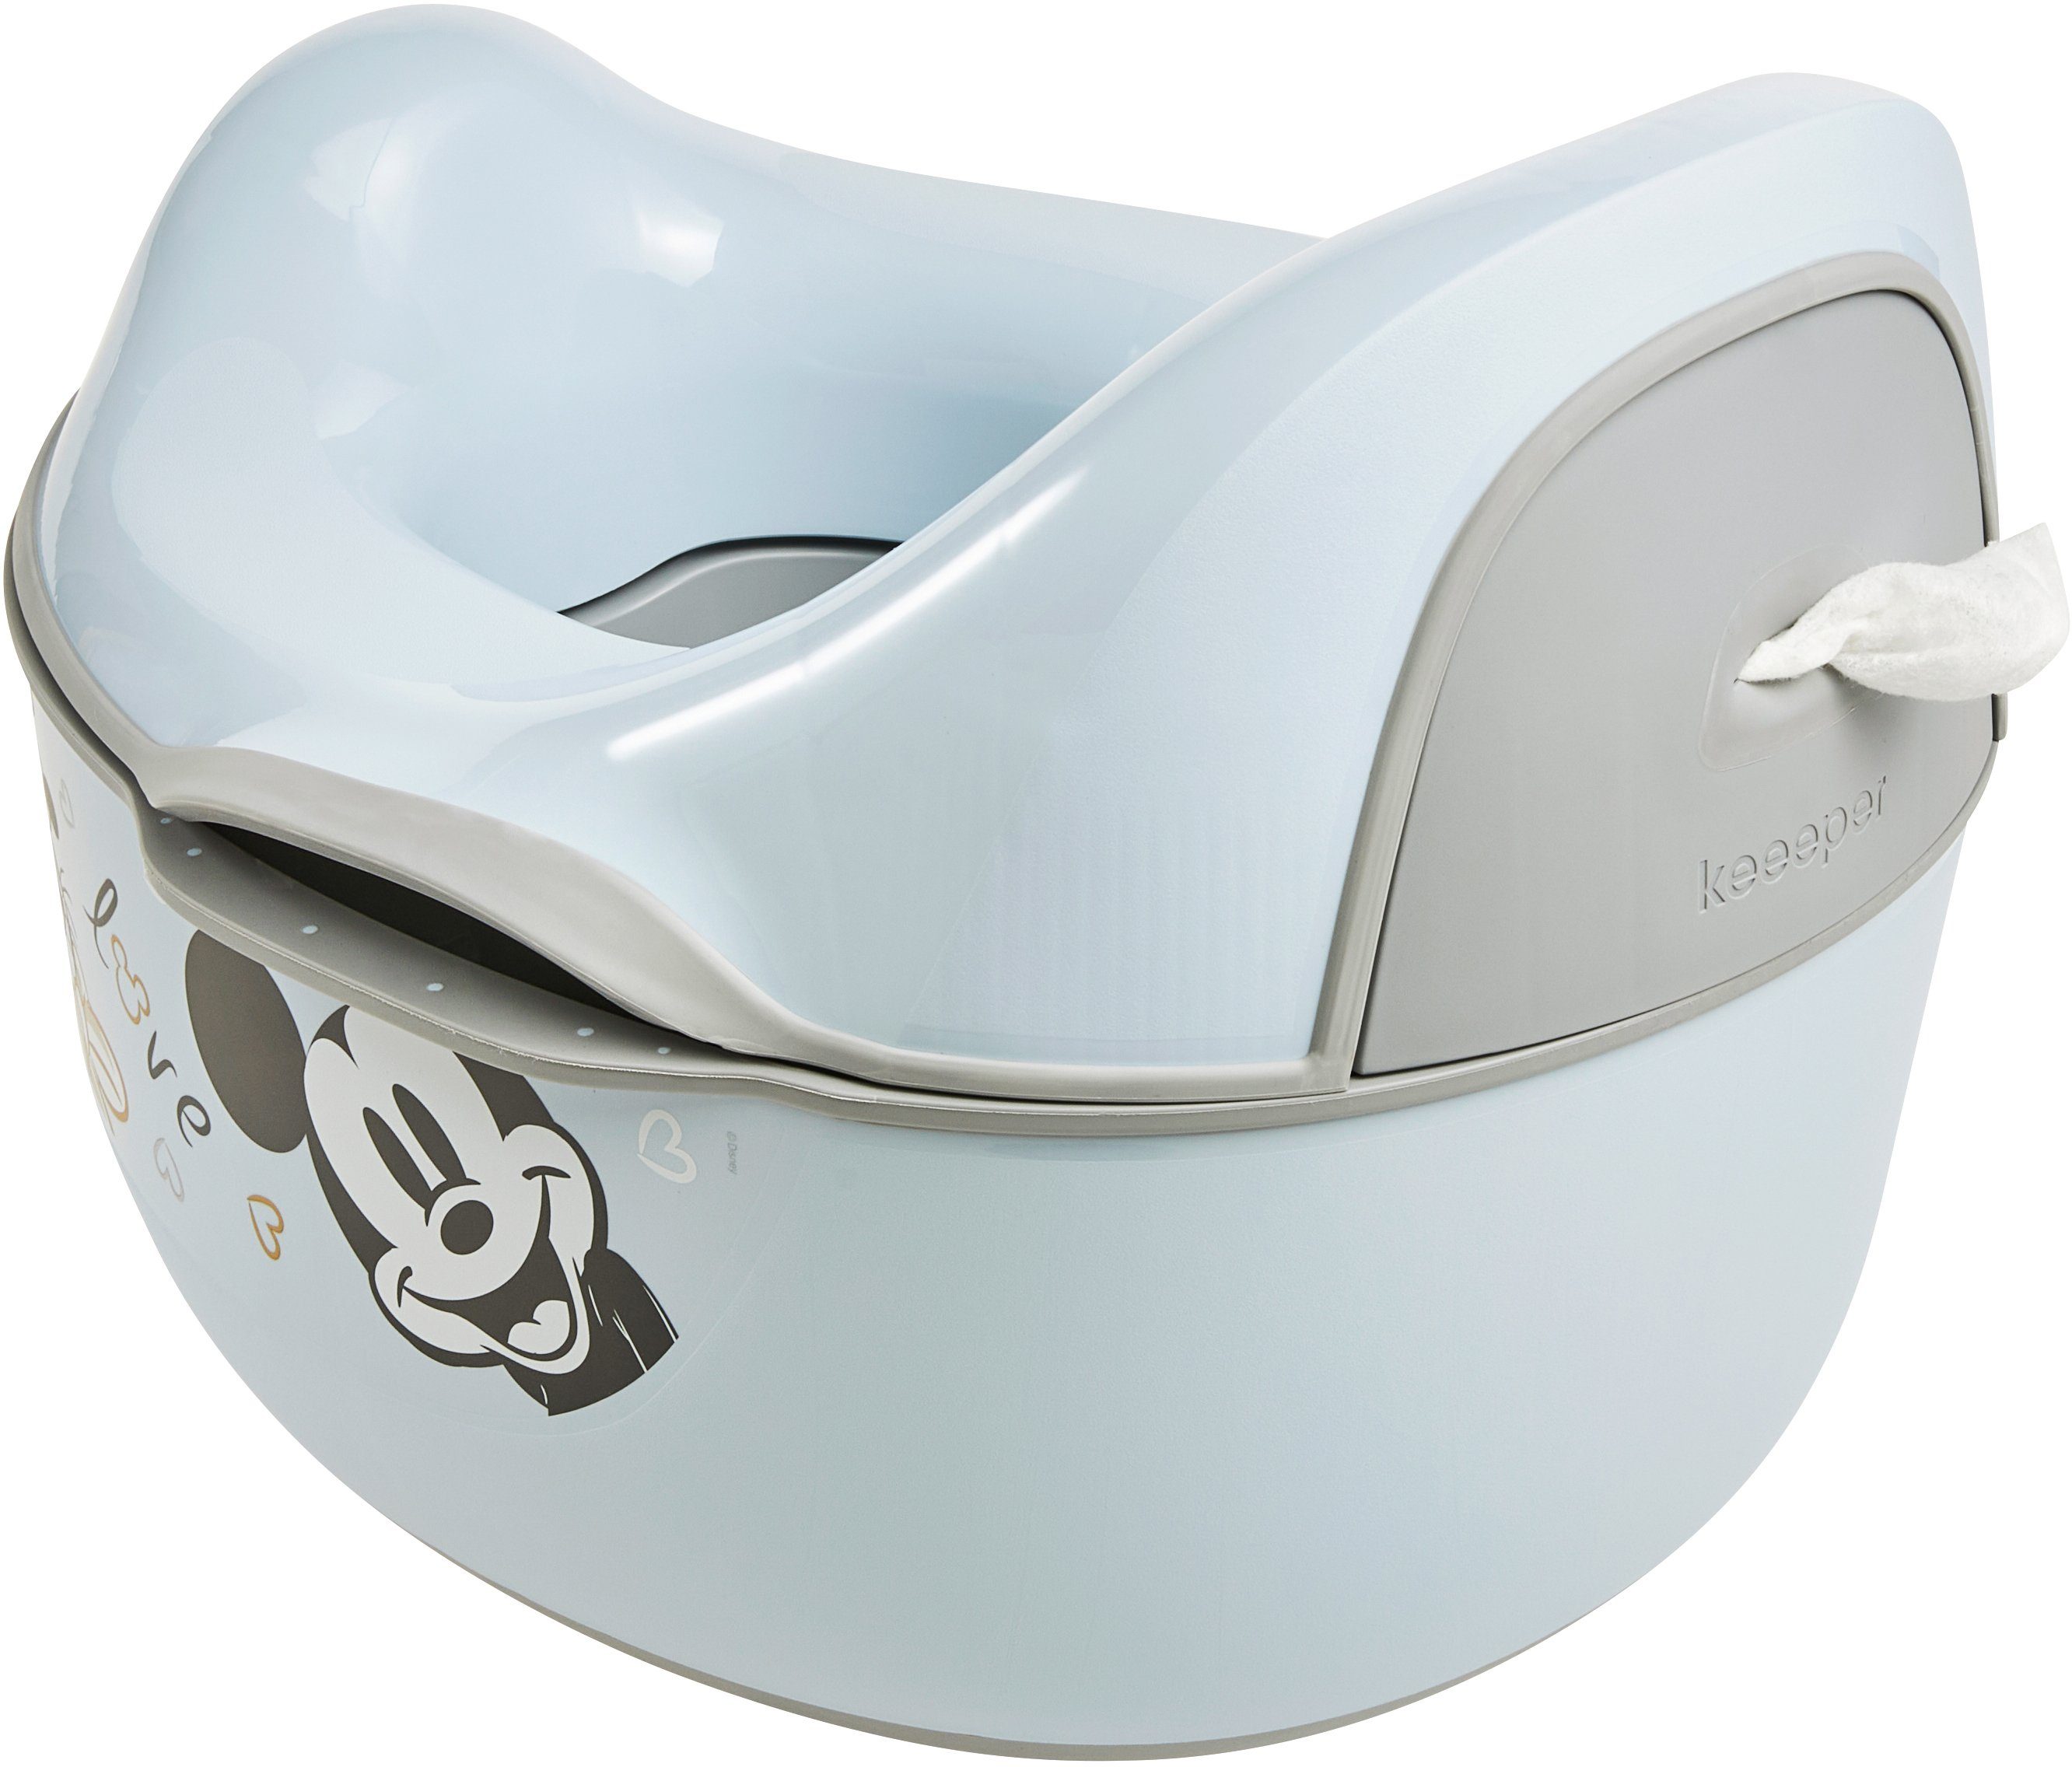 - FSC® in Europe, blue, Made Blau kasimir 4in1, deluxe babytopf Wald schützt keeeper weltweit mickey Toilettentrainer - cloudy